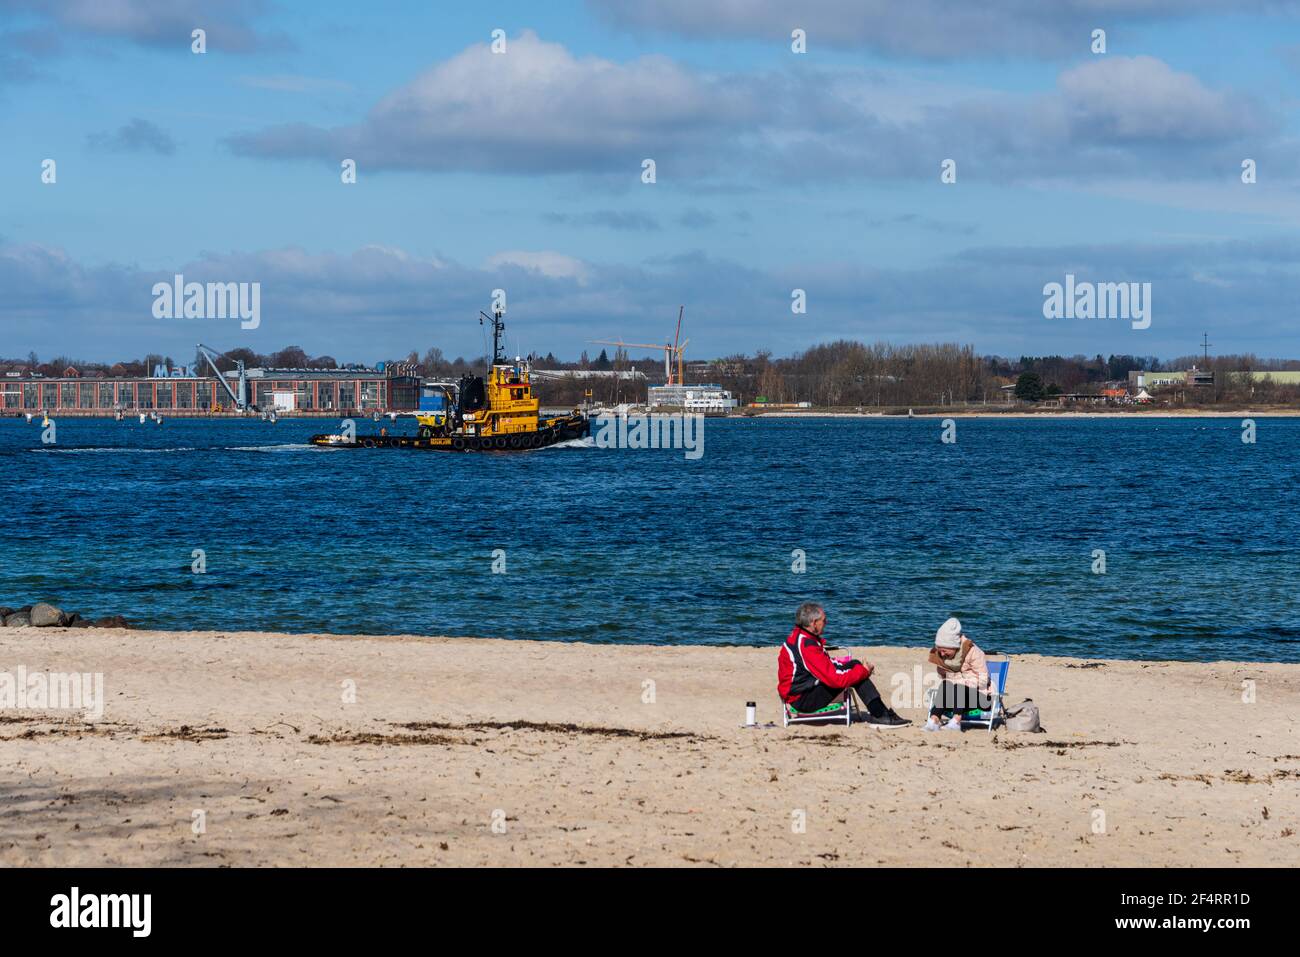 Stand an der Kieler Förde im Frühjahr, ein Paar hat es sich am Wasser gemütlich gemacht, ein Hafenschlepper passiert die Scene Foto Stock